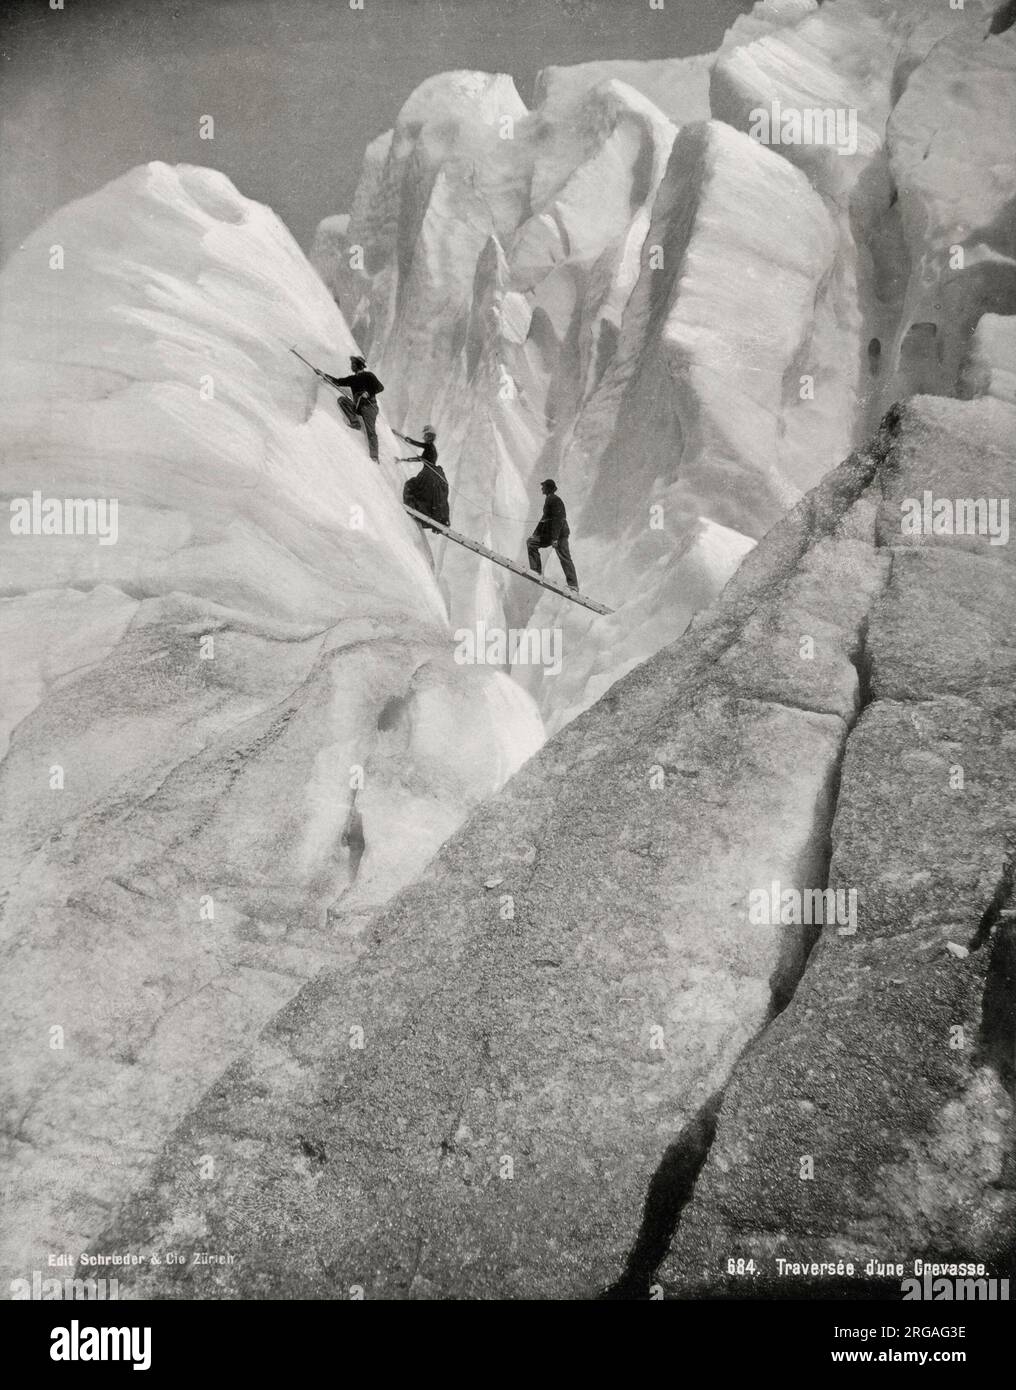 Fotografía del siglo XIX vintage - atravesando una grieta, escaladores en los Alpes. Foto de stock